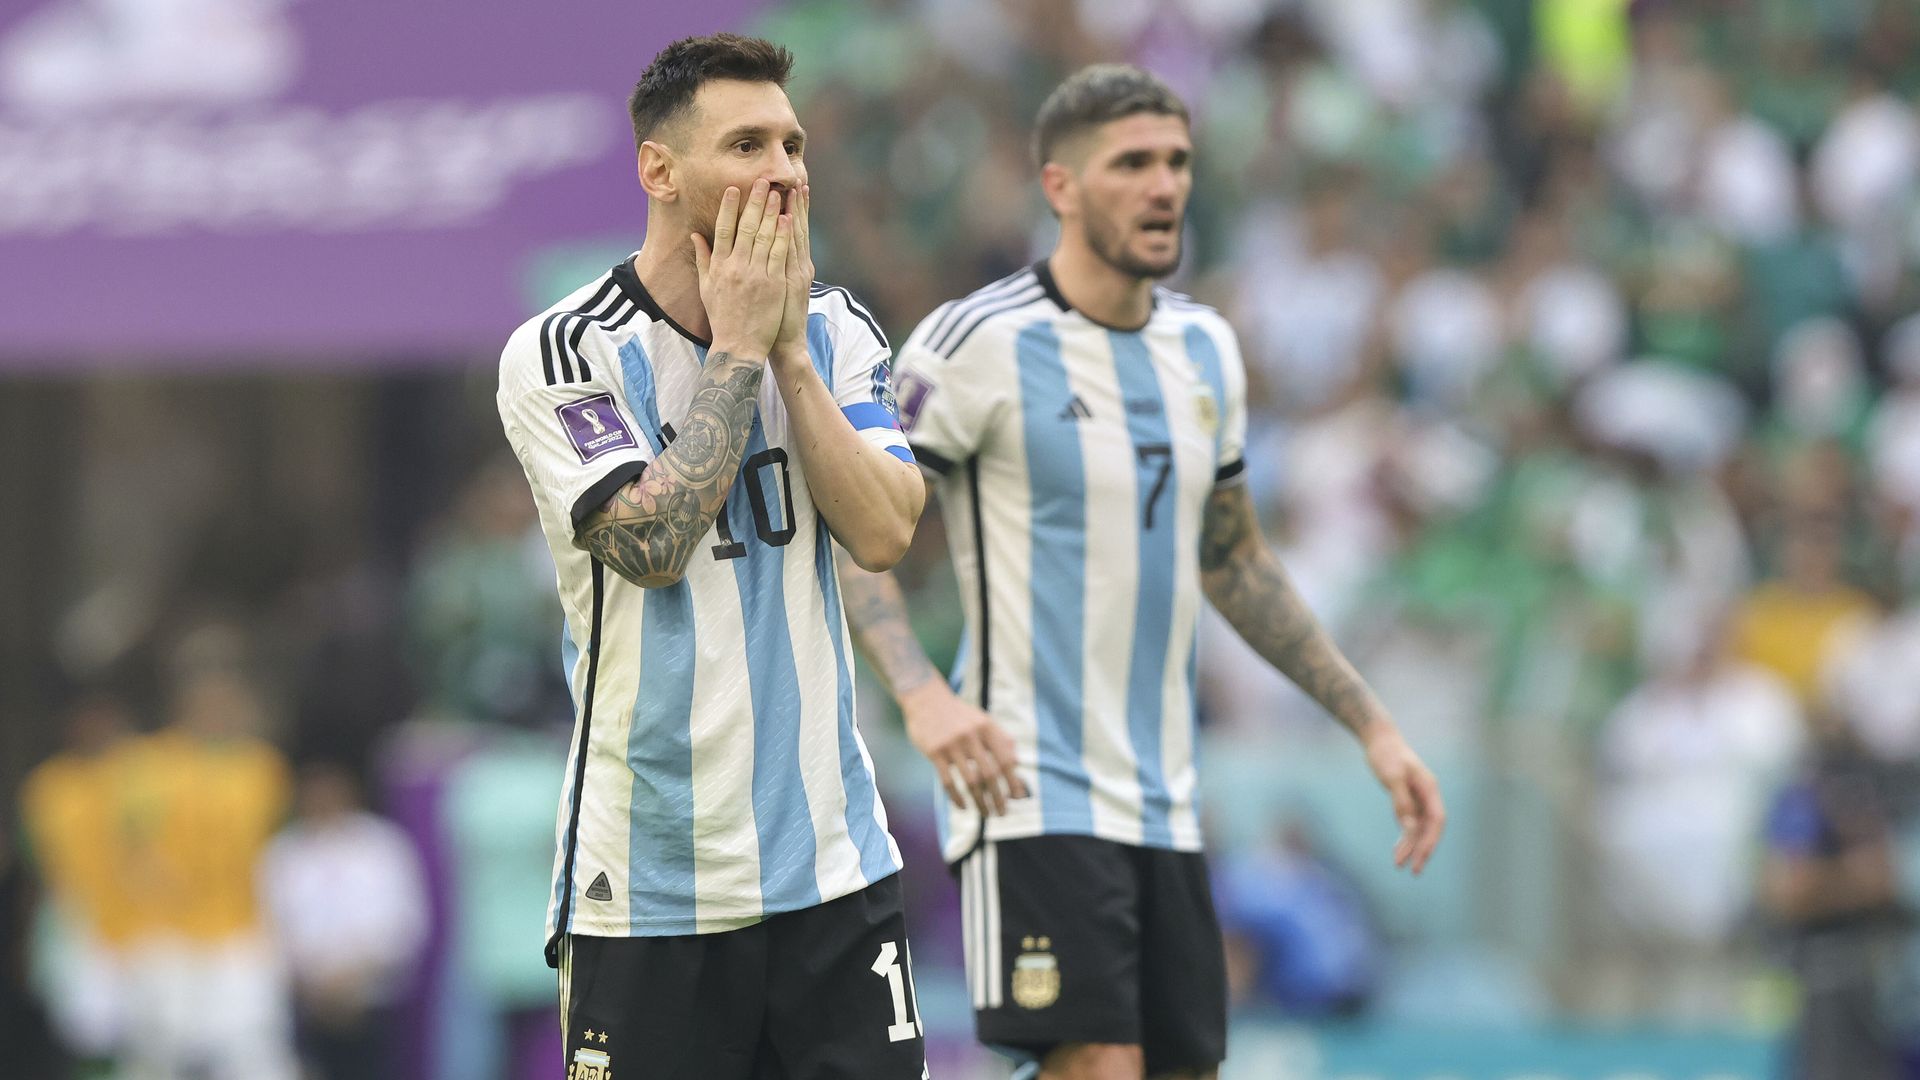 CdM 2022, Argentine : Lionel Messi absent de l'entraînement !